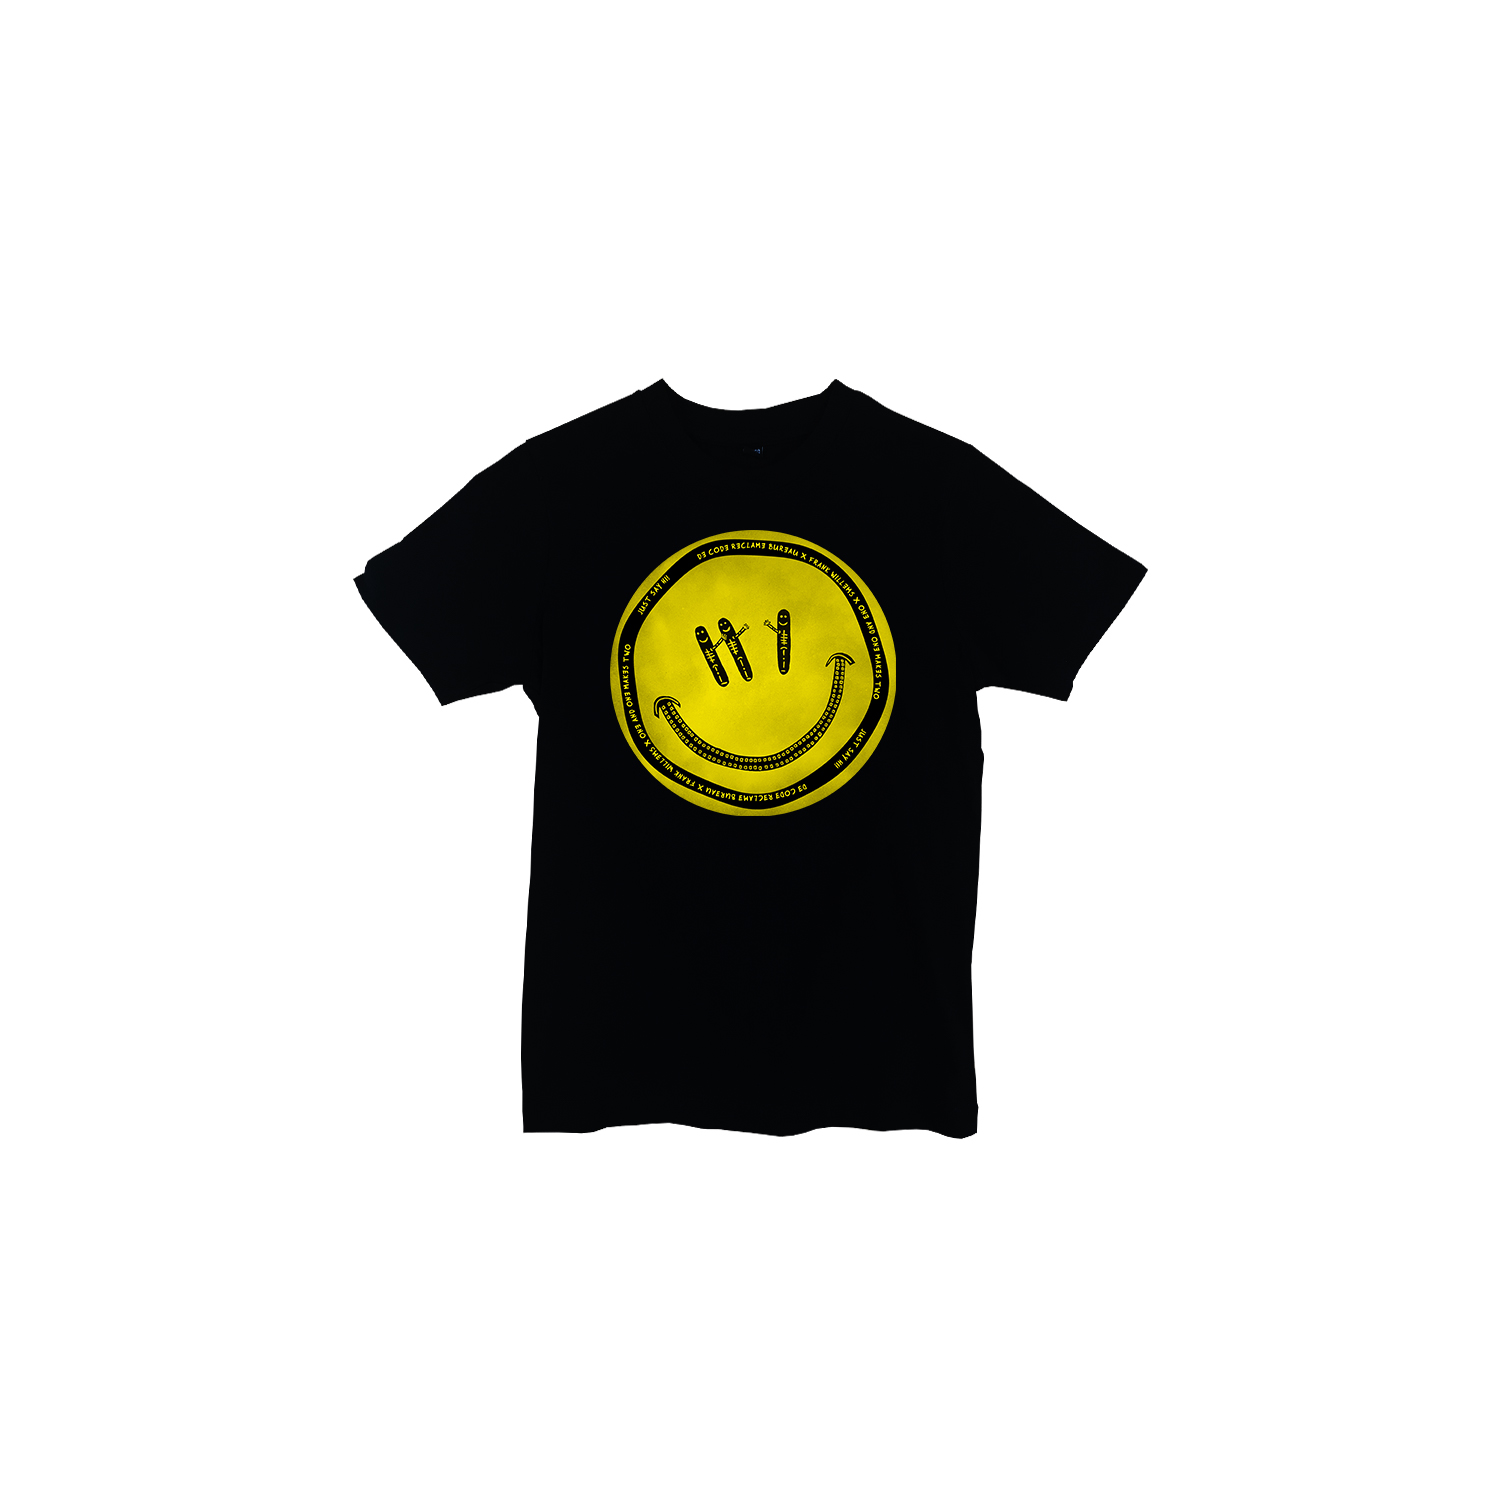 Kids T-shirt - JUST SAY HI! by De Code Reclamebureau x Frank Willems – zwart